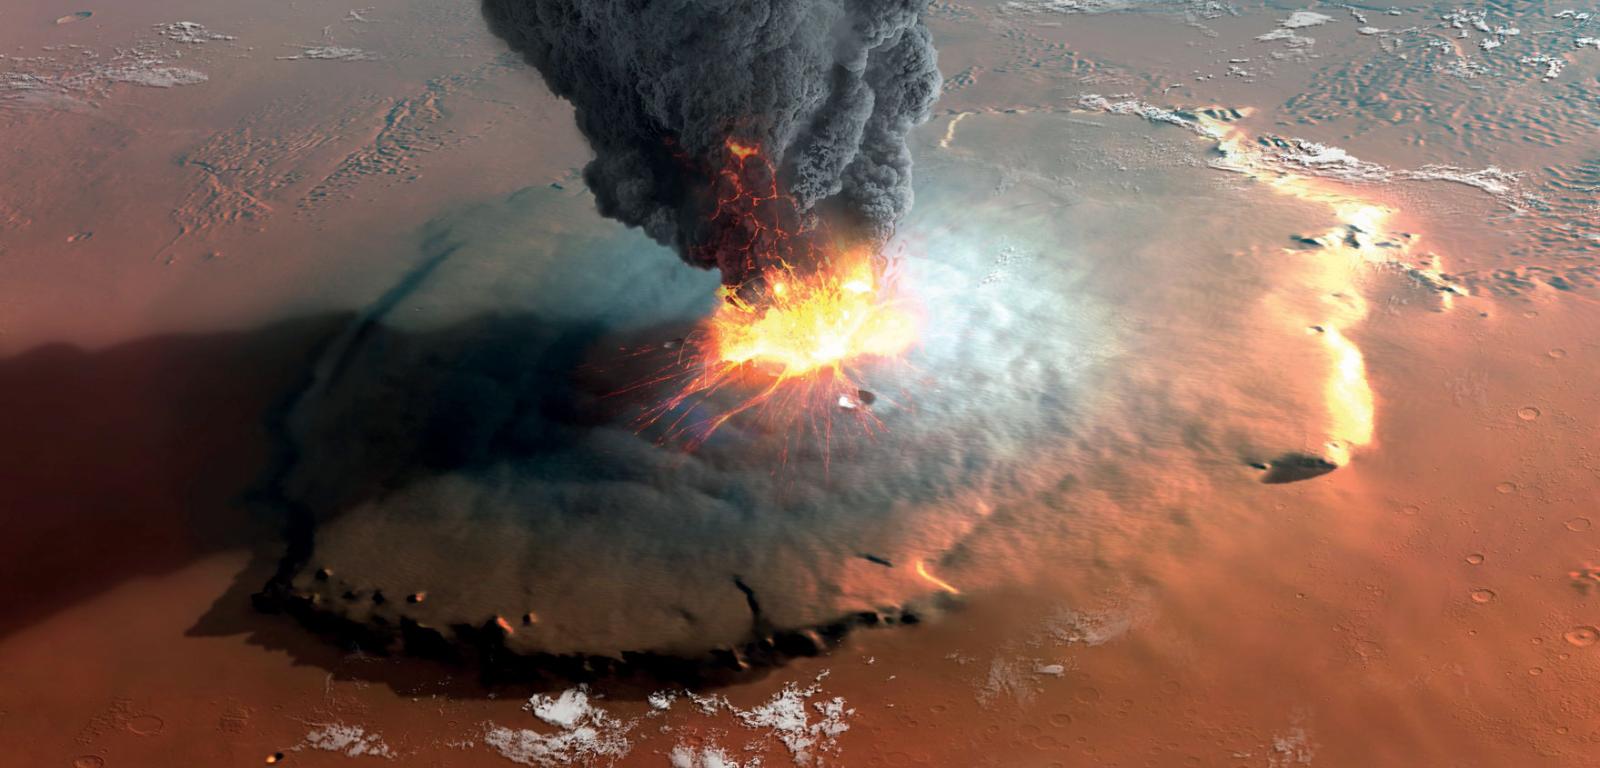 Artystyczna wizja erupcji Olympus Mons – największego wulkanu Marsa i całego Układu Słonecznego.